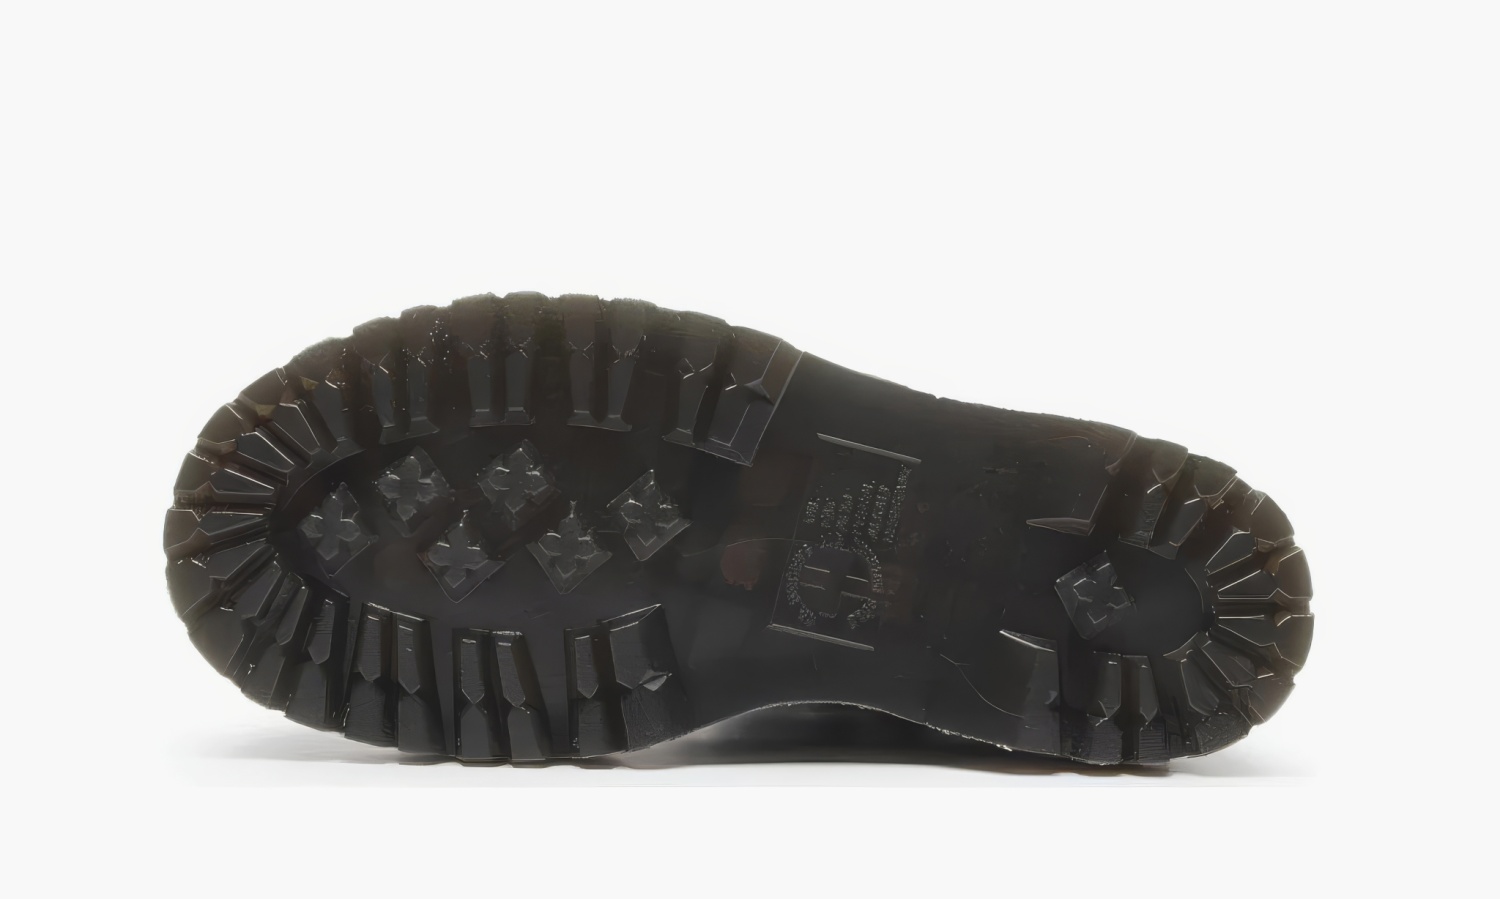 фото Dr. Martens Jadon Platform Boots "Black Smooth Leather" (Dr. Martens)-15265001